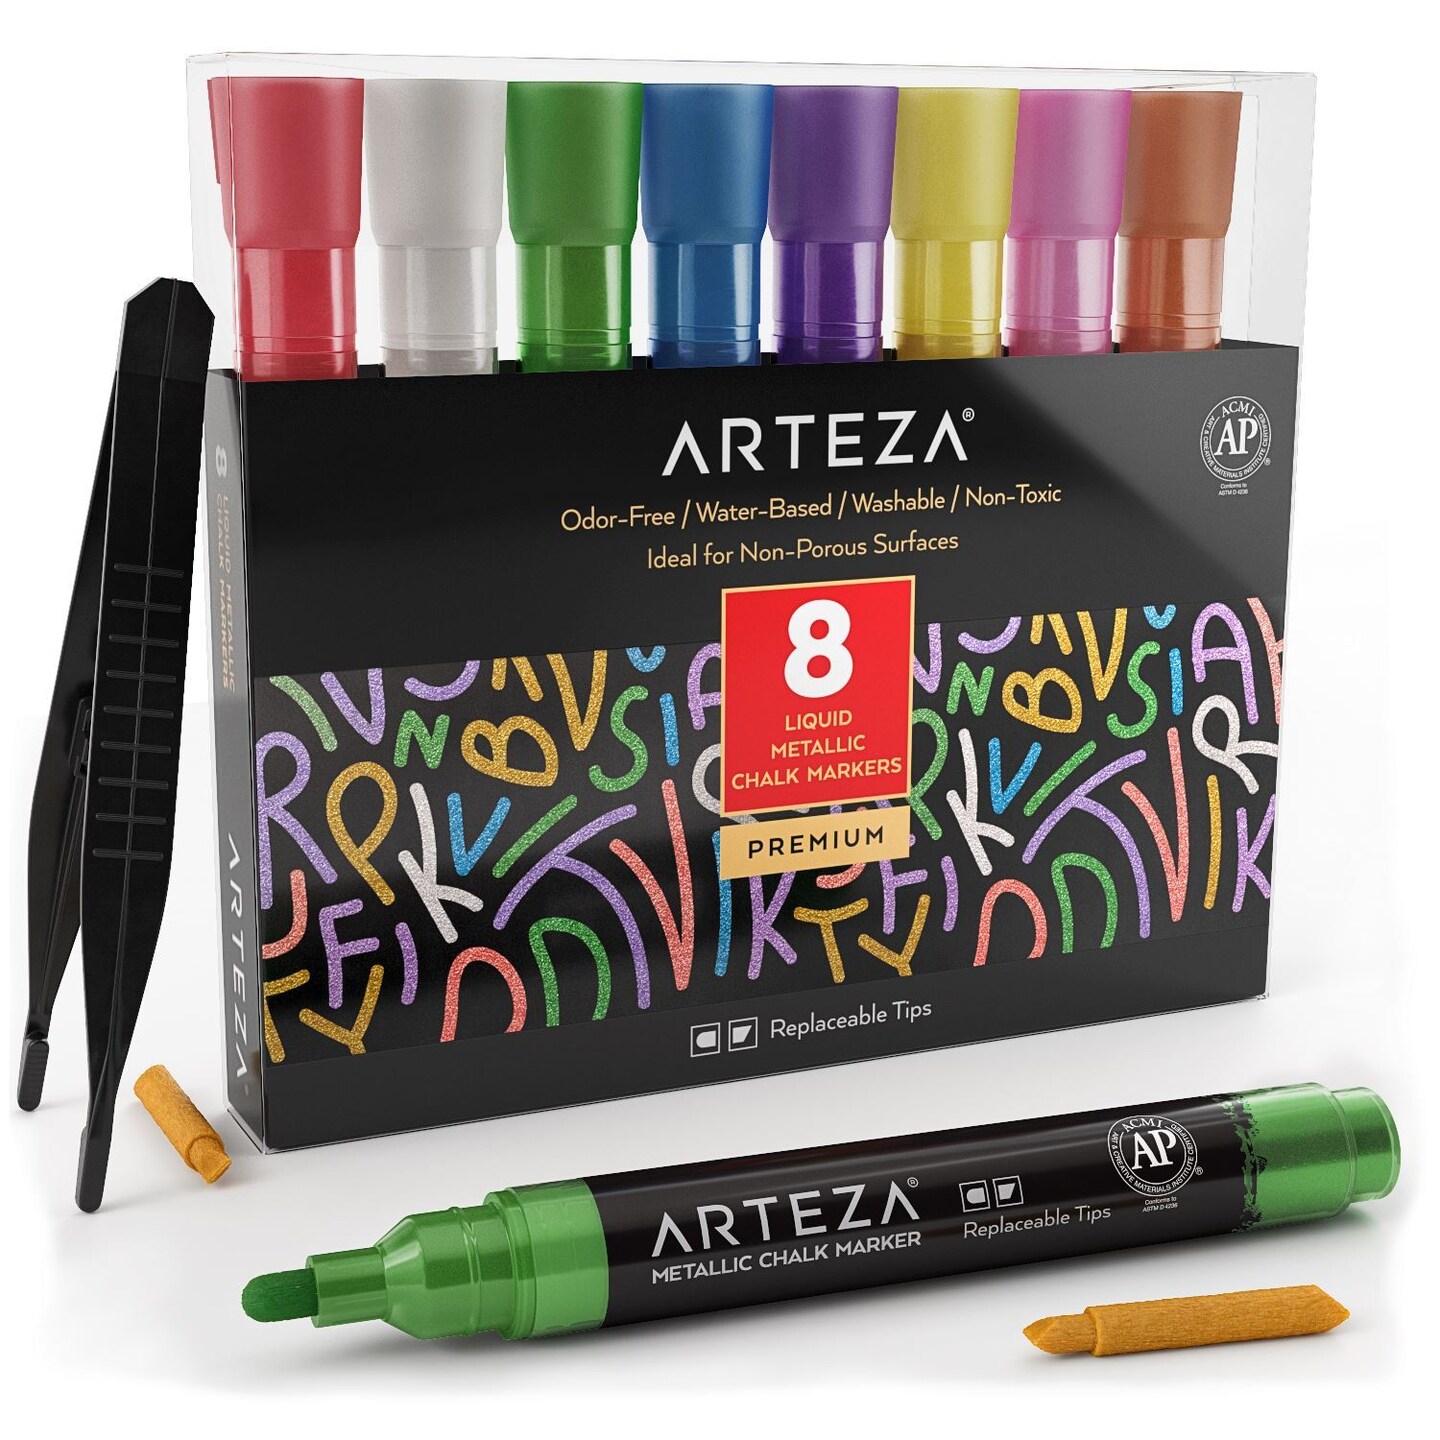 ALEMHOP Chalk Markers for School - Chalkboard Markers - Chlak Pens